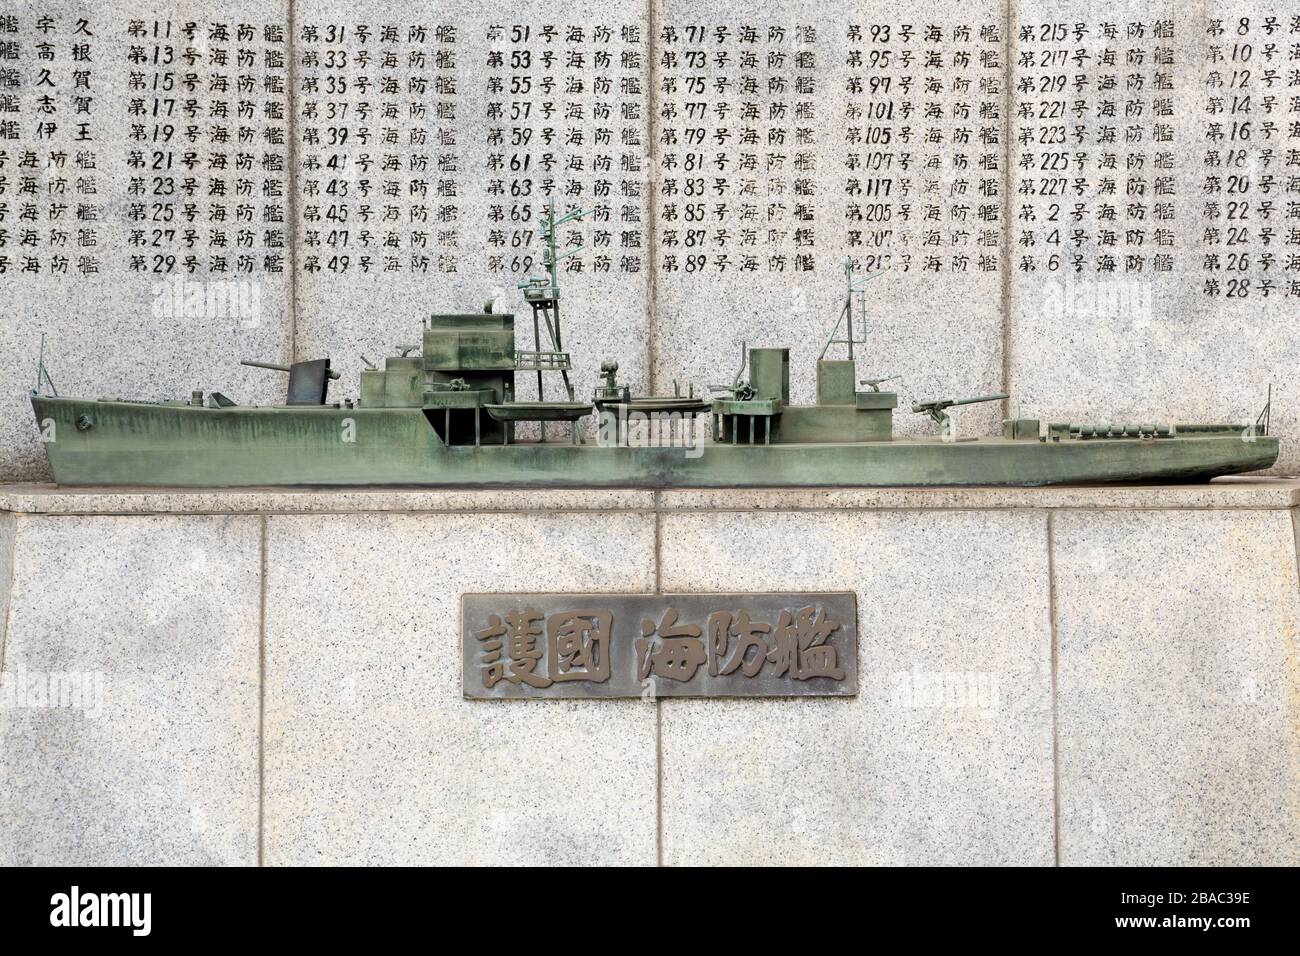 Battleship Memorial, Yushukan Museum, Tokyo, Japan Stock Photo